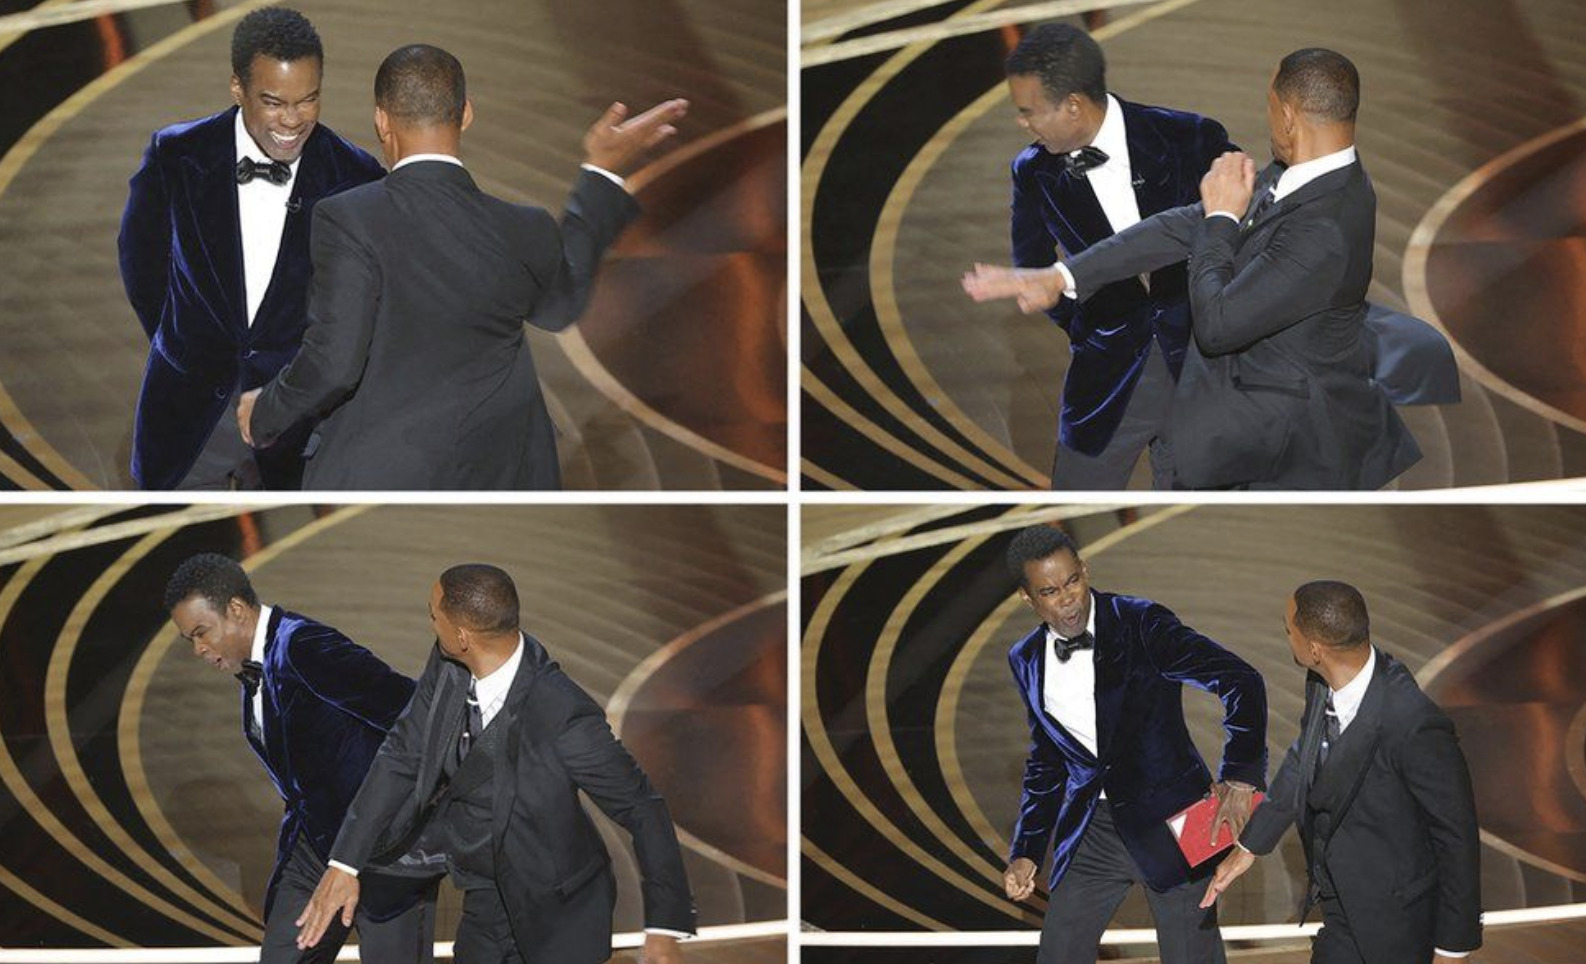 (ВИДЕО) Уилл Смит ударил по лицу ведущего во время церемонии вручения премий «Оскар»